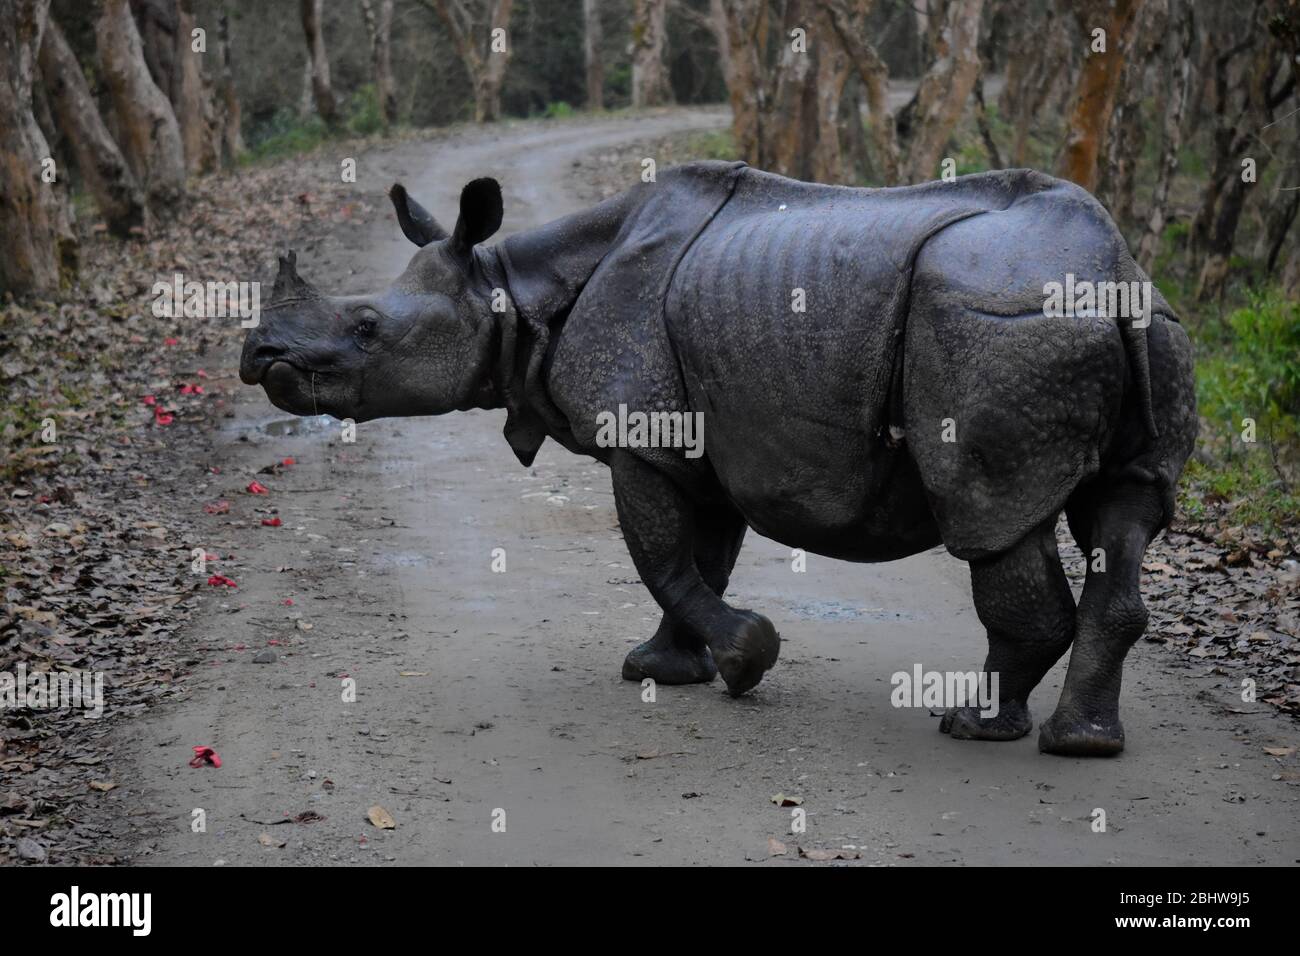 Vista lateral del rinoceronte indio en el Parque Nacional Kaziranga Foto de stock